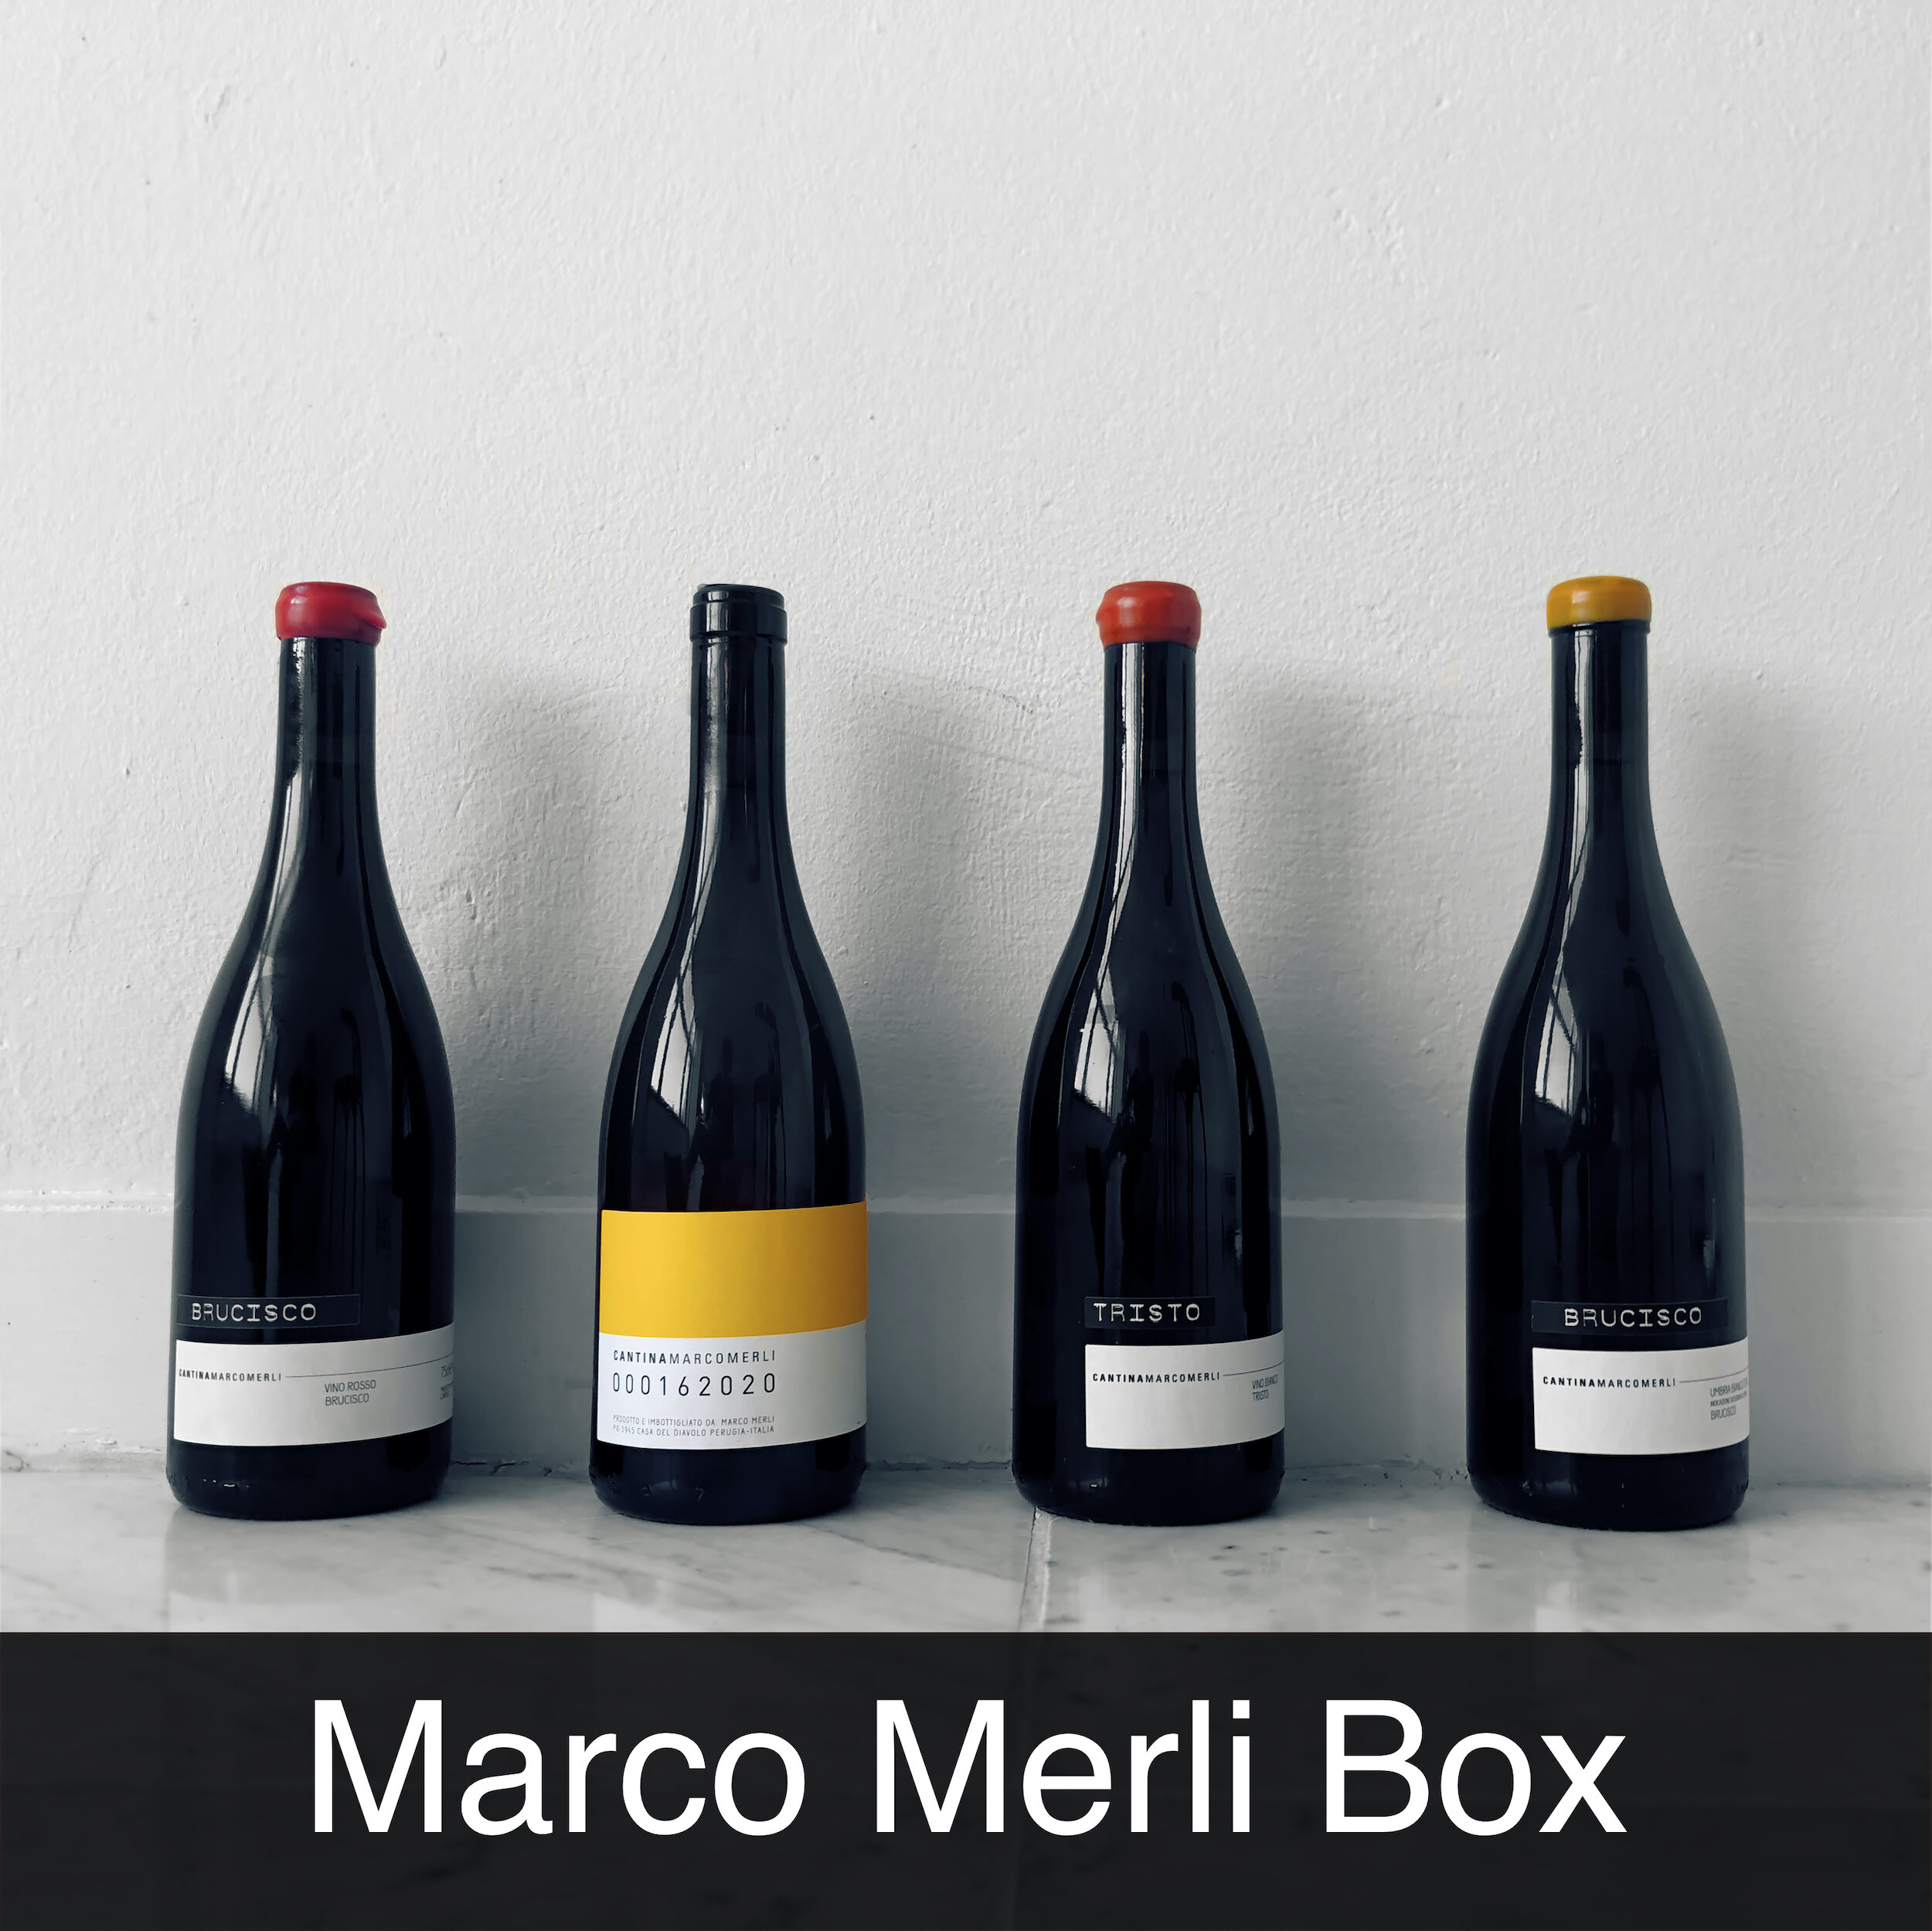 Vino Per Tutti.nl - Marco Merli Box